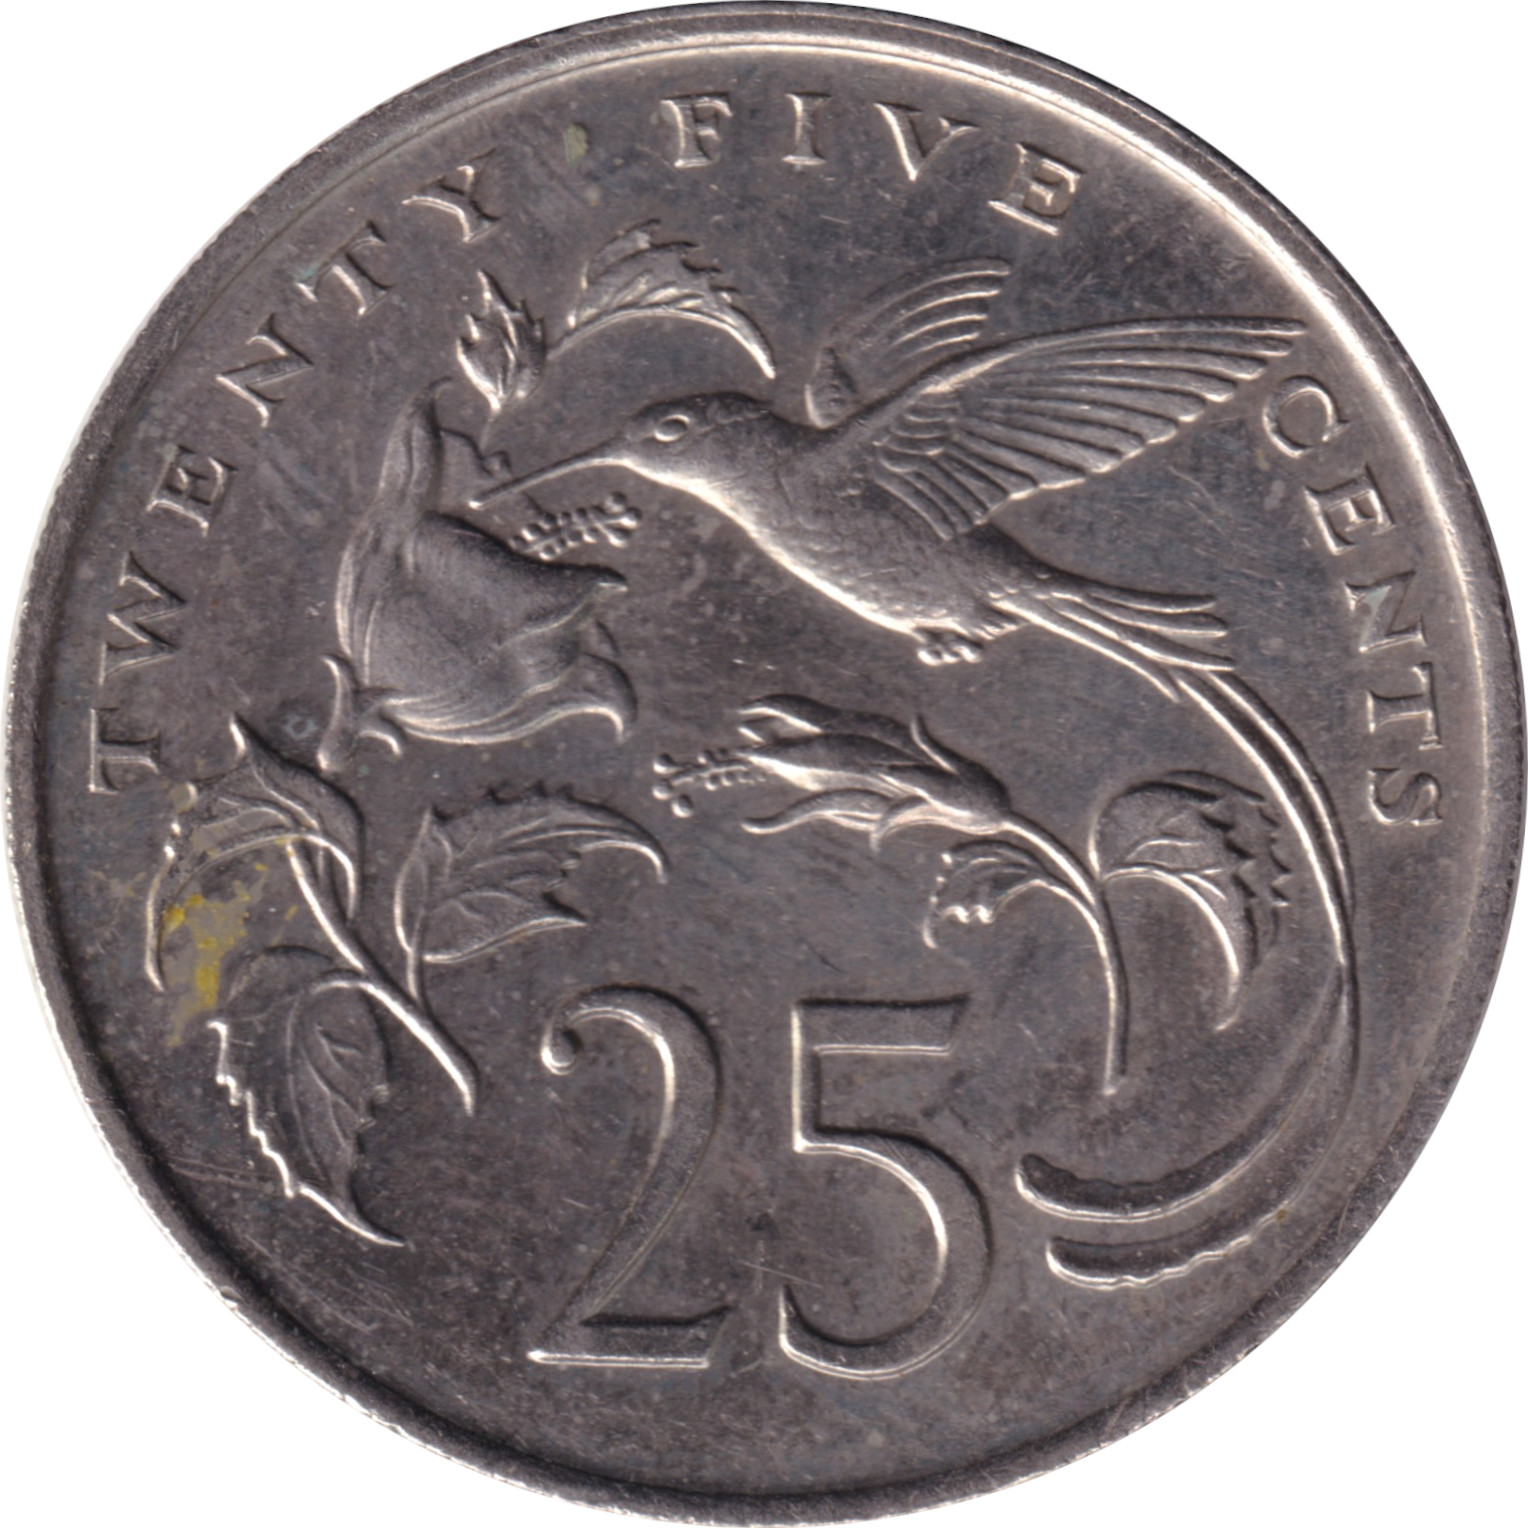 25 cents - Bird - Large legend